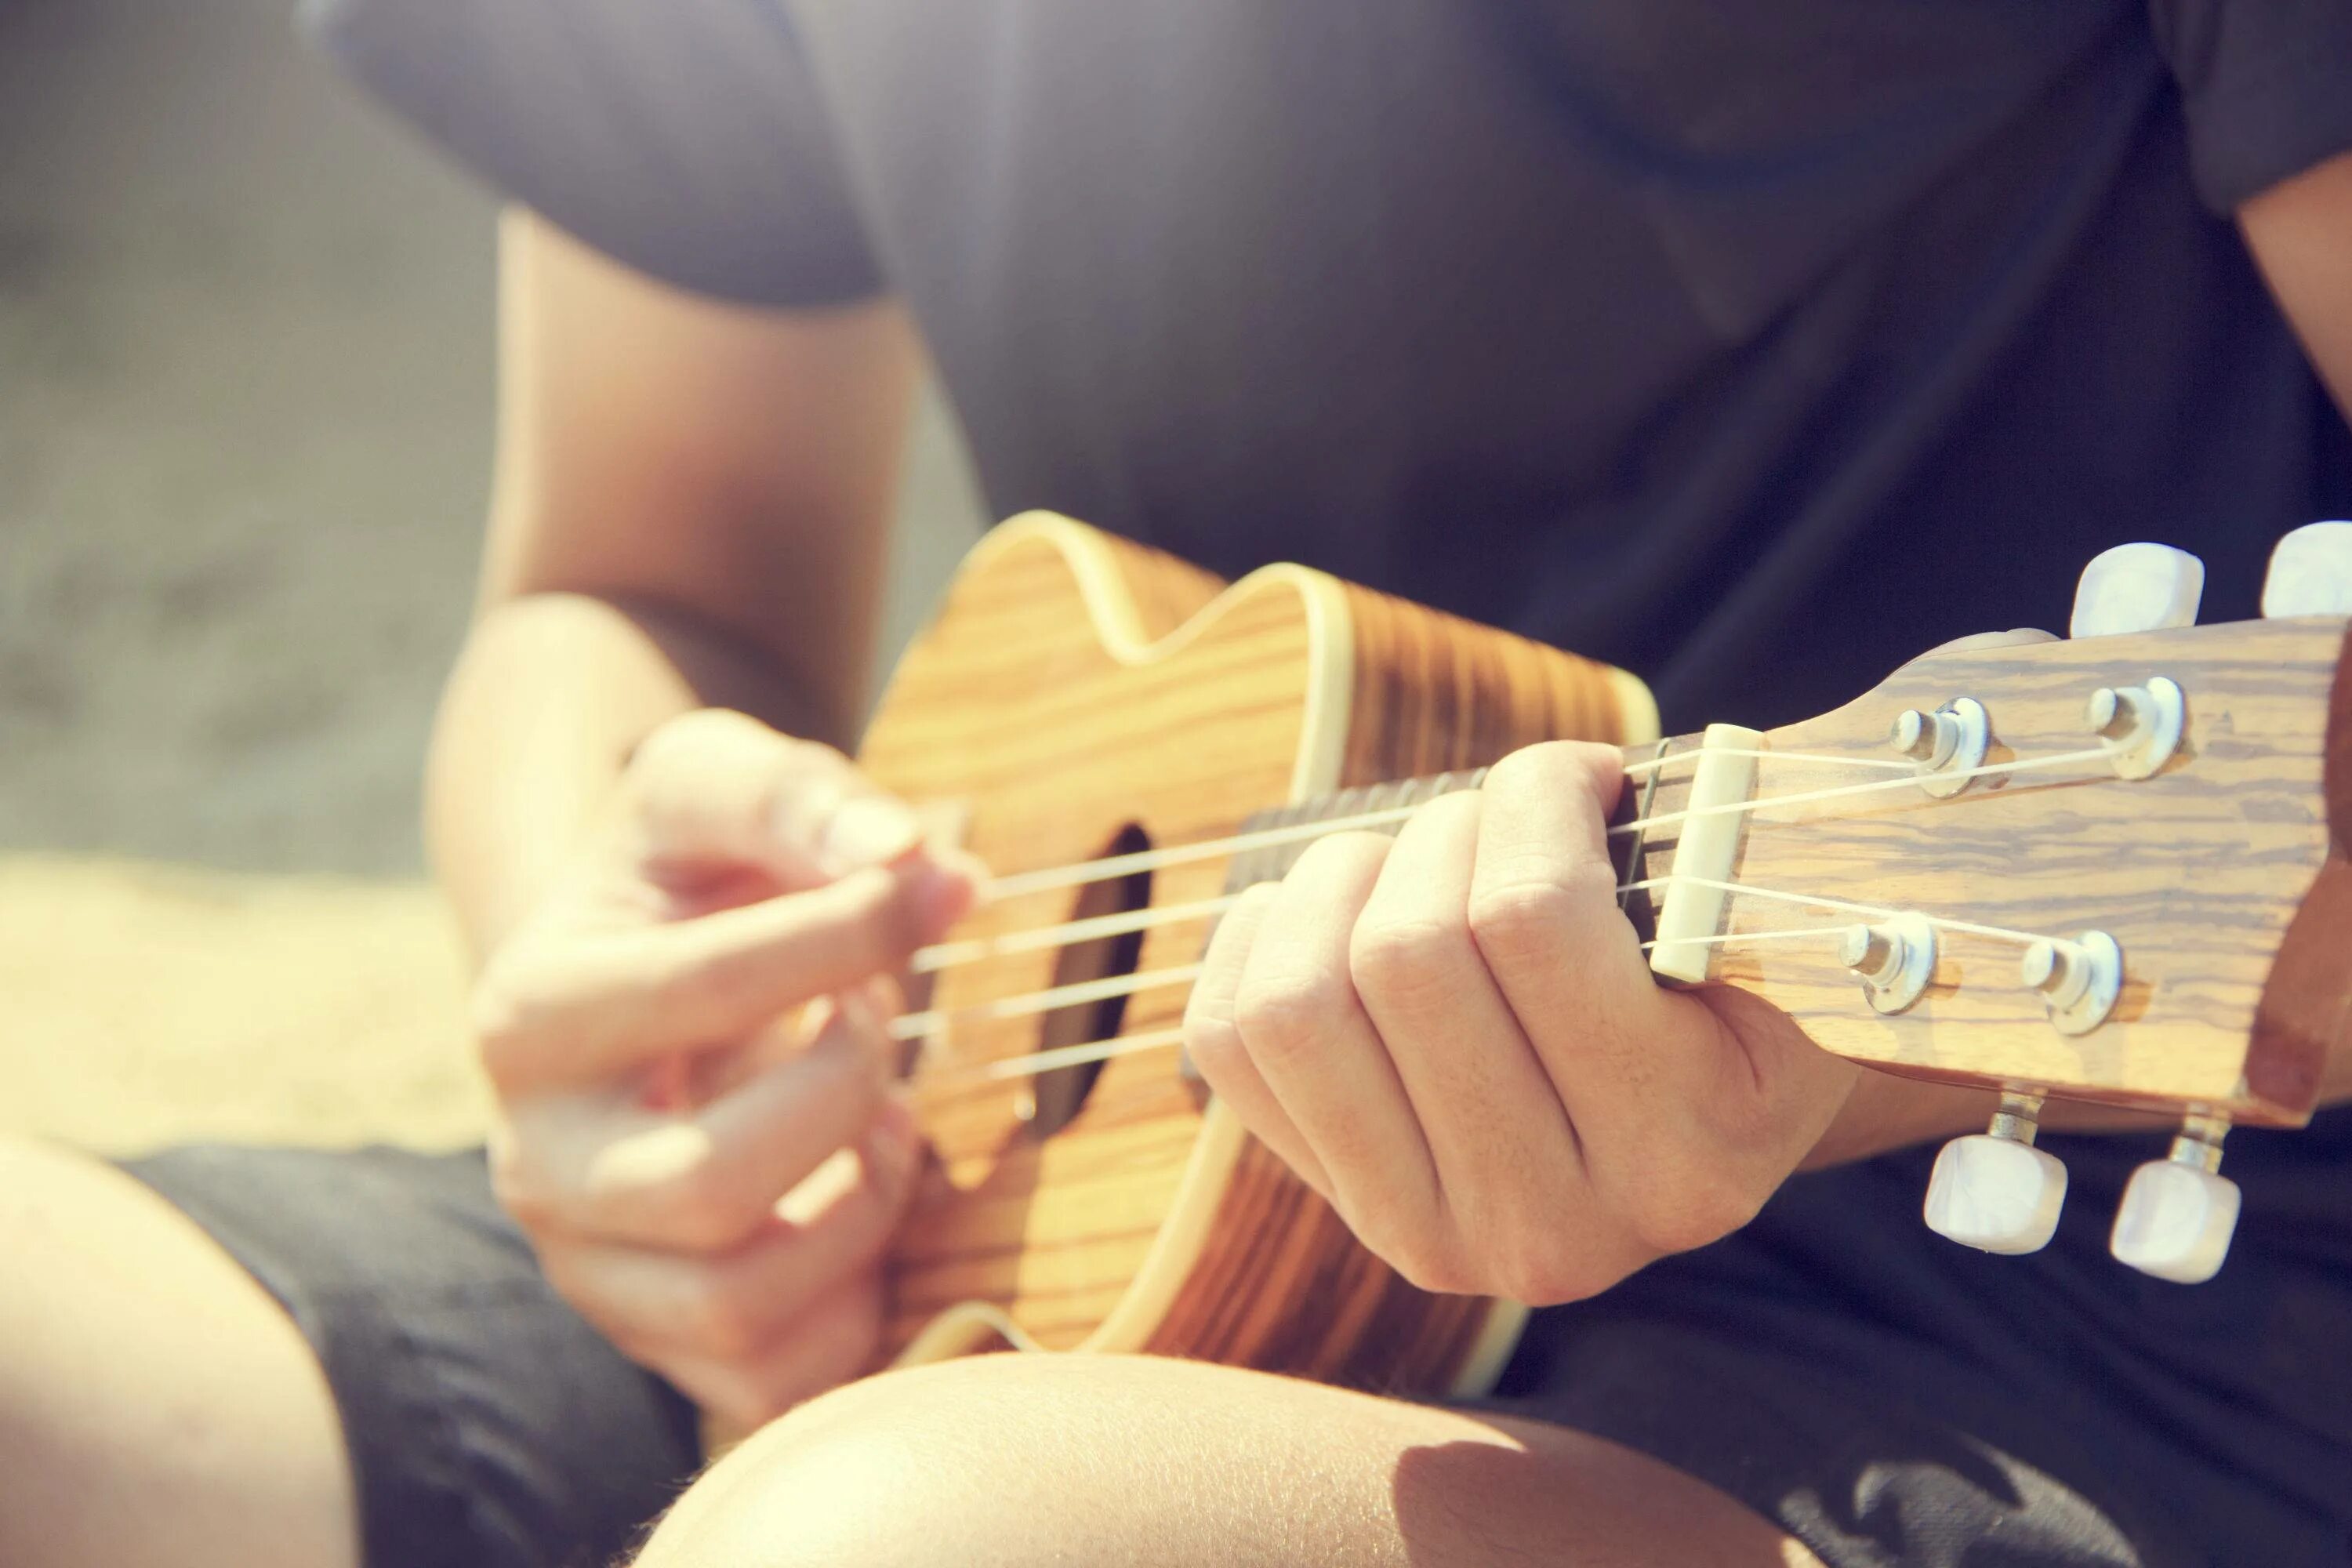 Музыка для игры на музыкальных инструментах. Укулеле в руках. Человек с гитарой. Музыкальный инструмент укулеле. Игра на музыкальных инструментах.